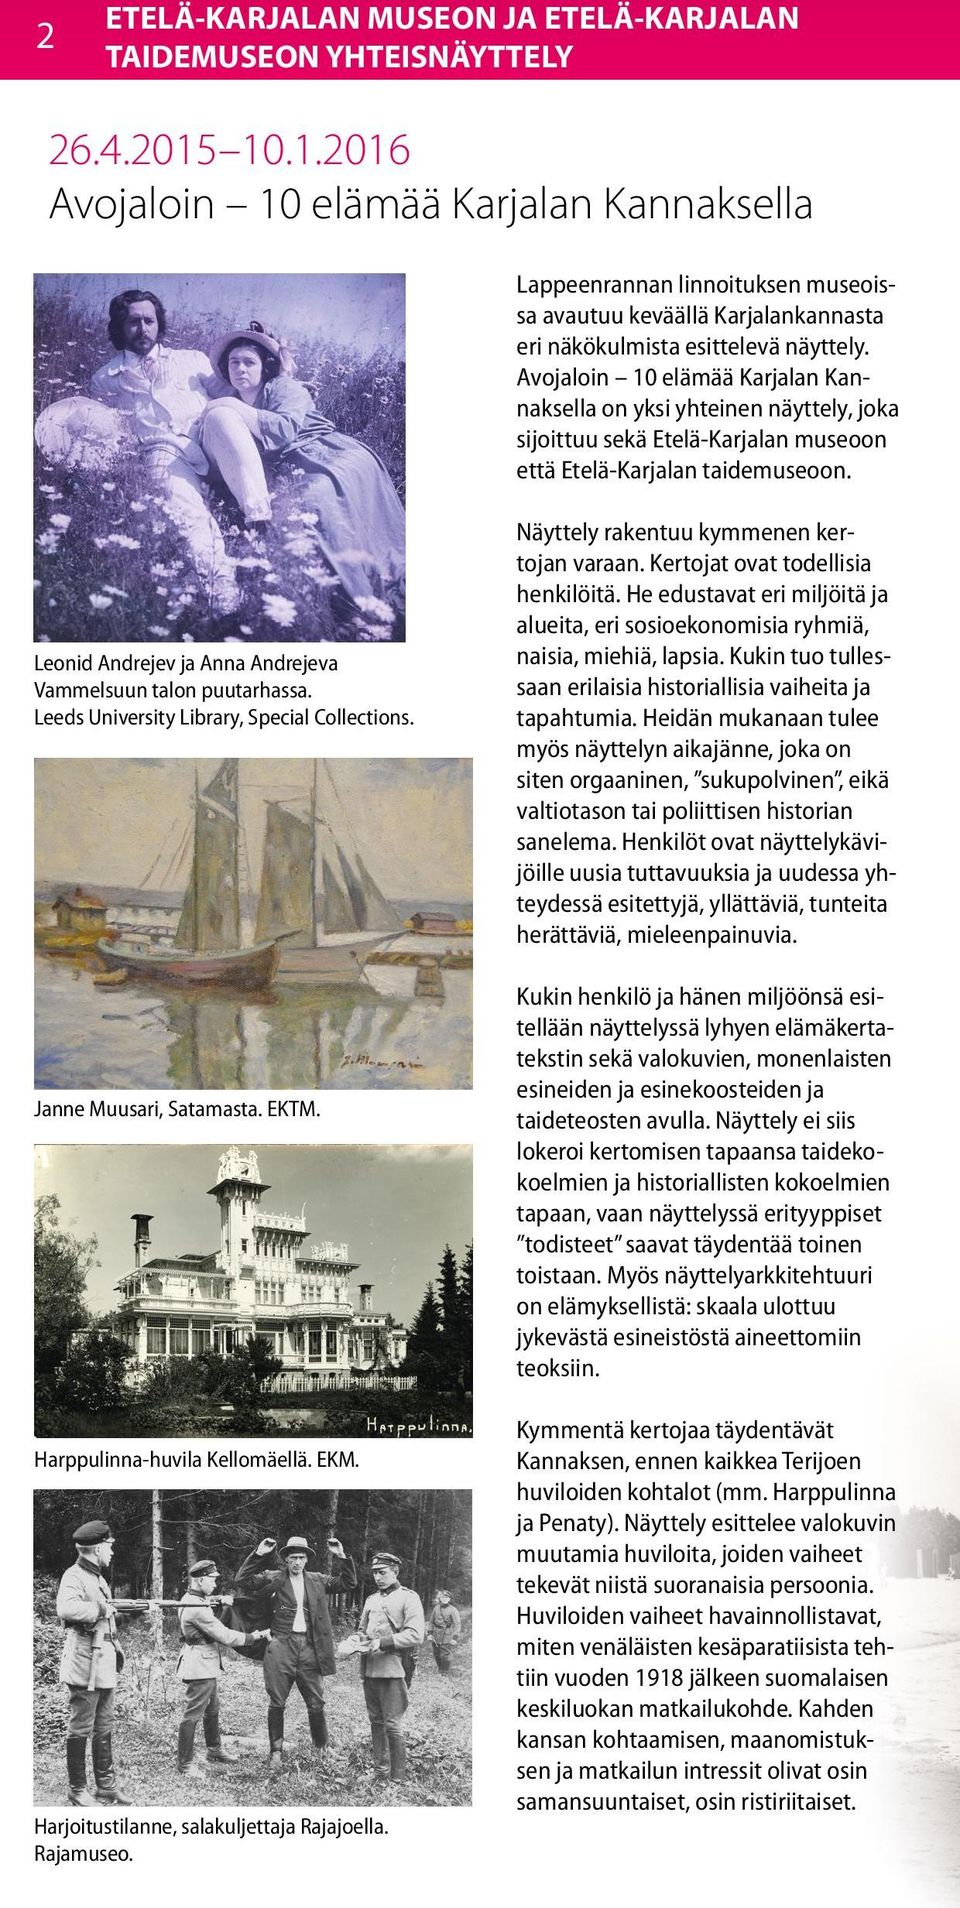 Avojaloin 10 elämää Karjalan Kannaksella on yksi yhteinen näyttely, joka sijoittuu sekä Etelä-Karjalan museoon että Etelä-Karjalan taidemuseoon.